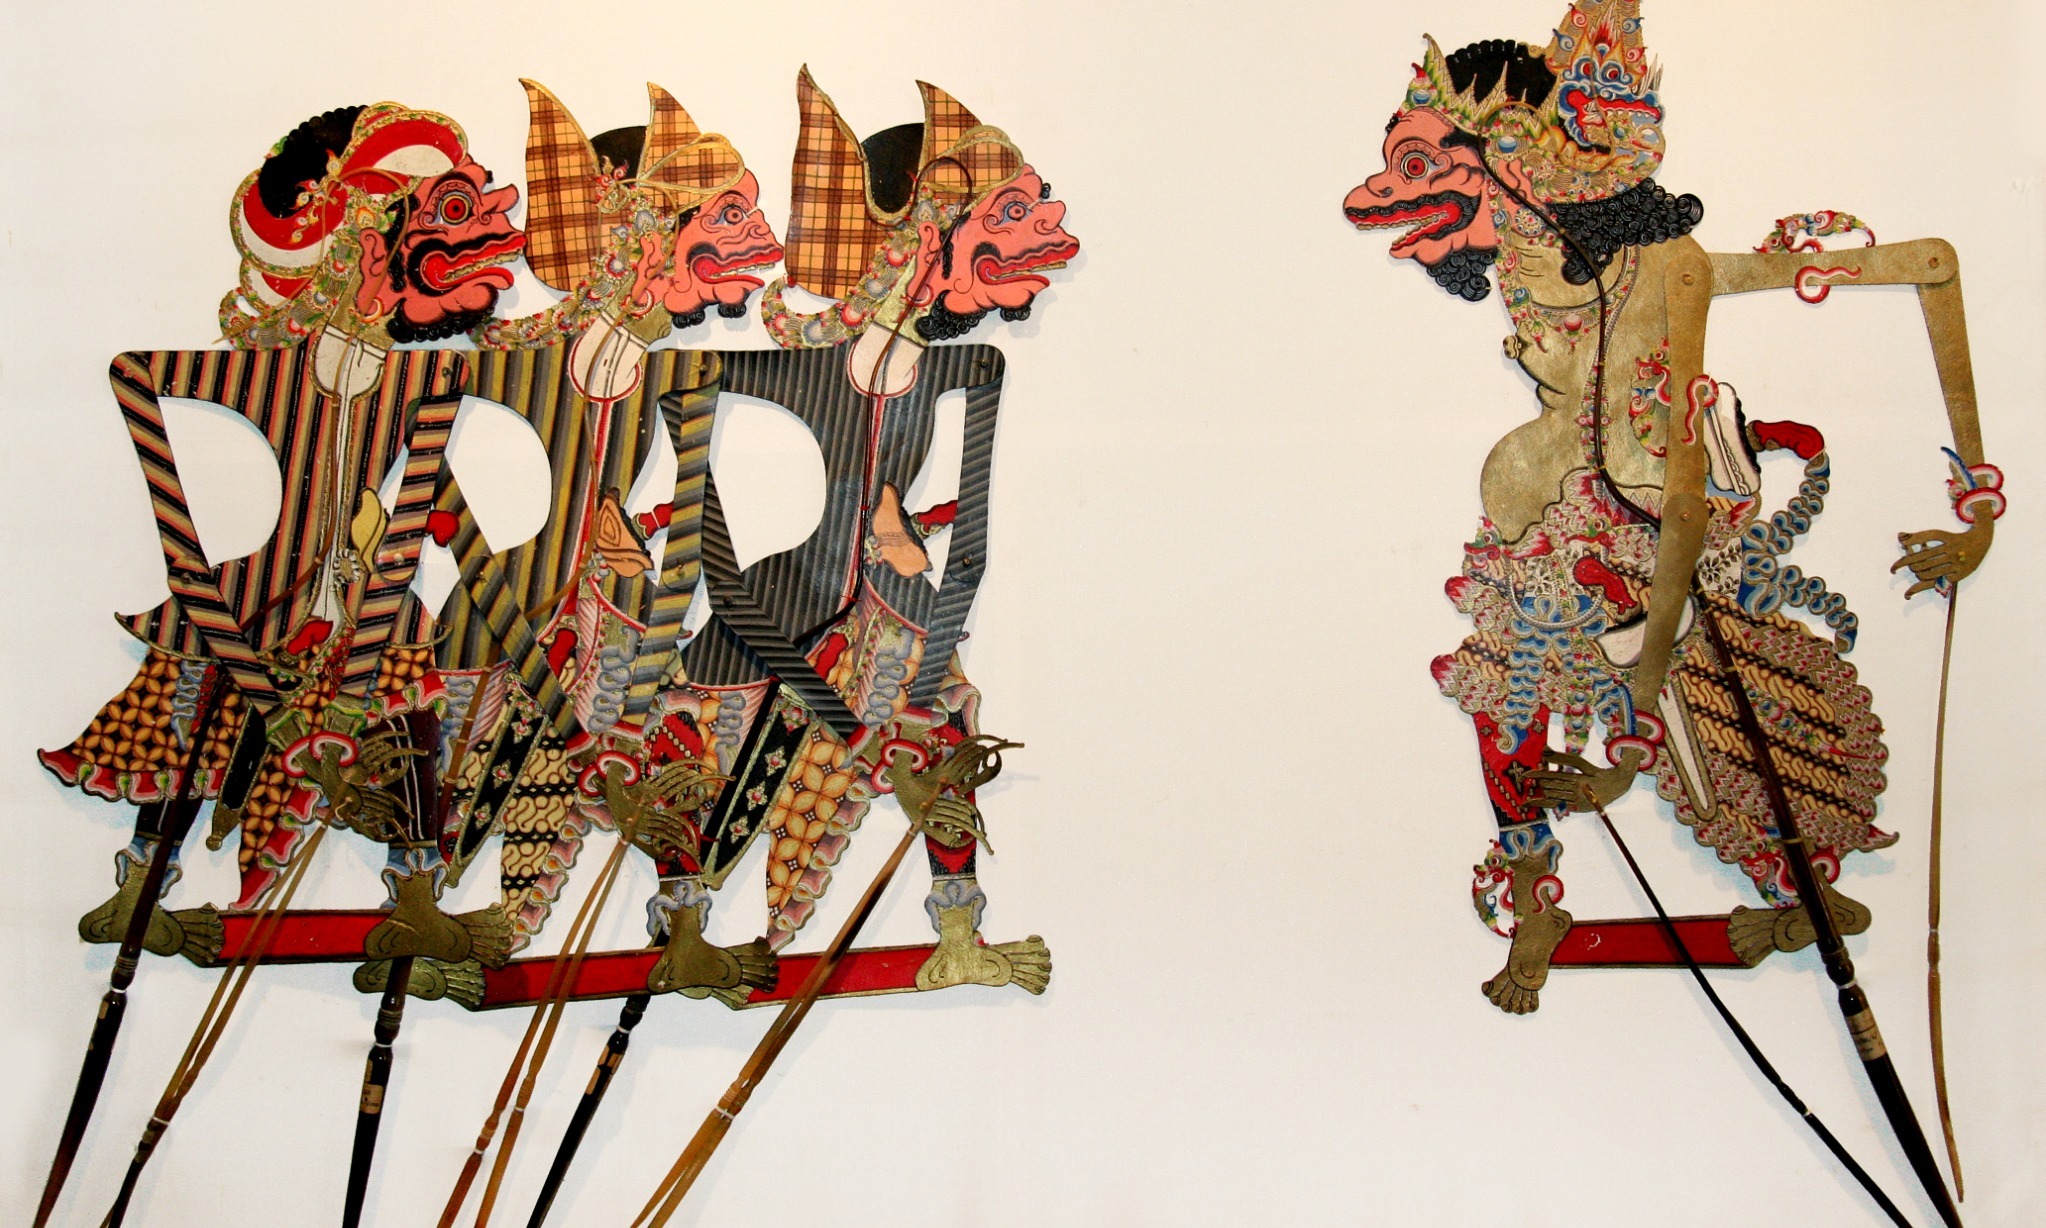 Tatah Sungging, Seni Membuat Wayang Kulit di Sonorejo, Sukoharjo